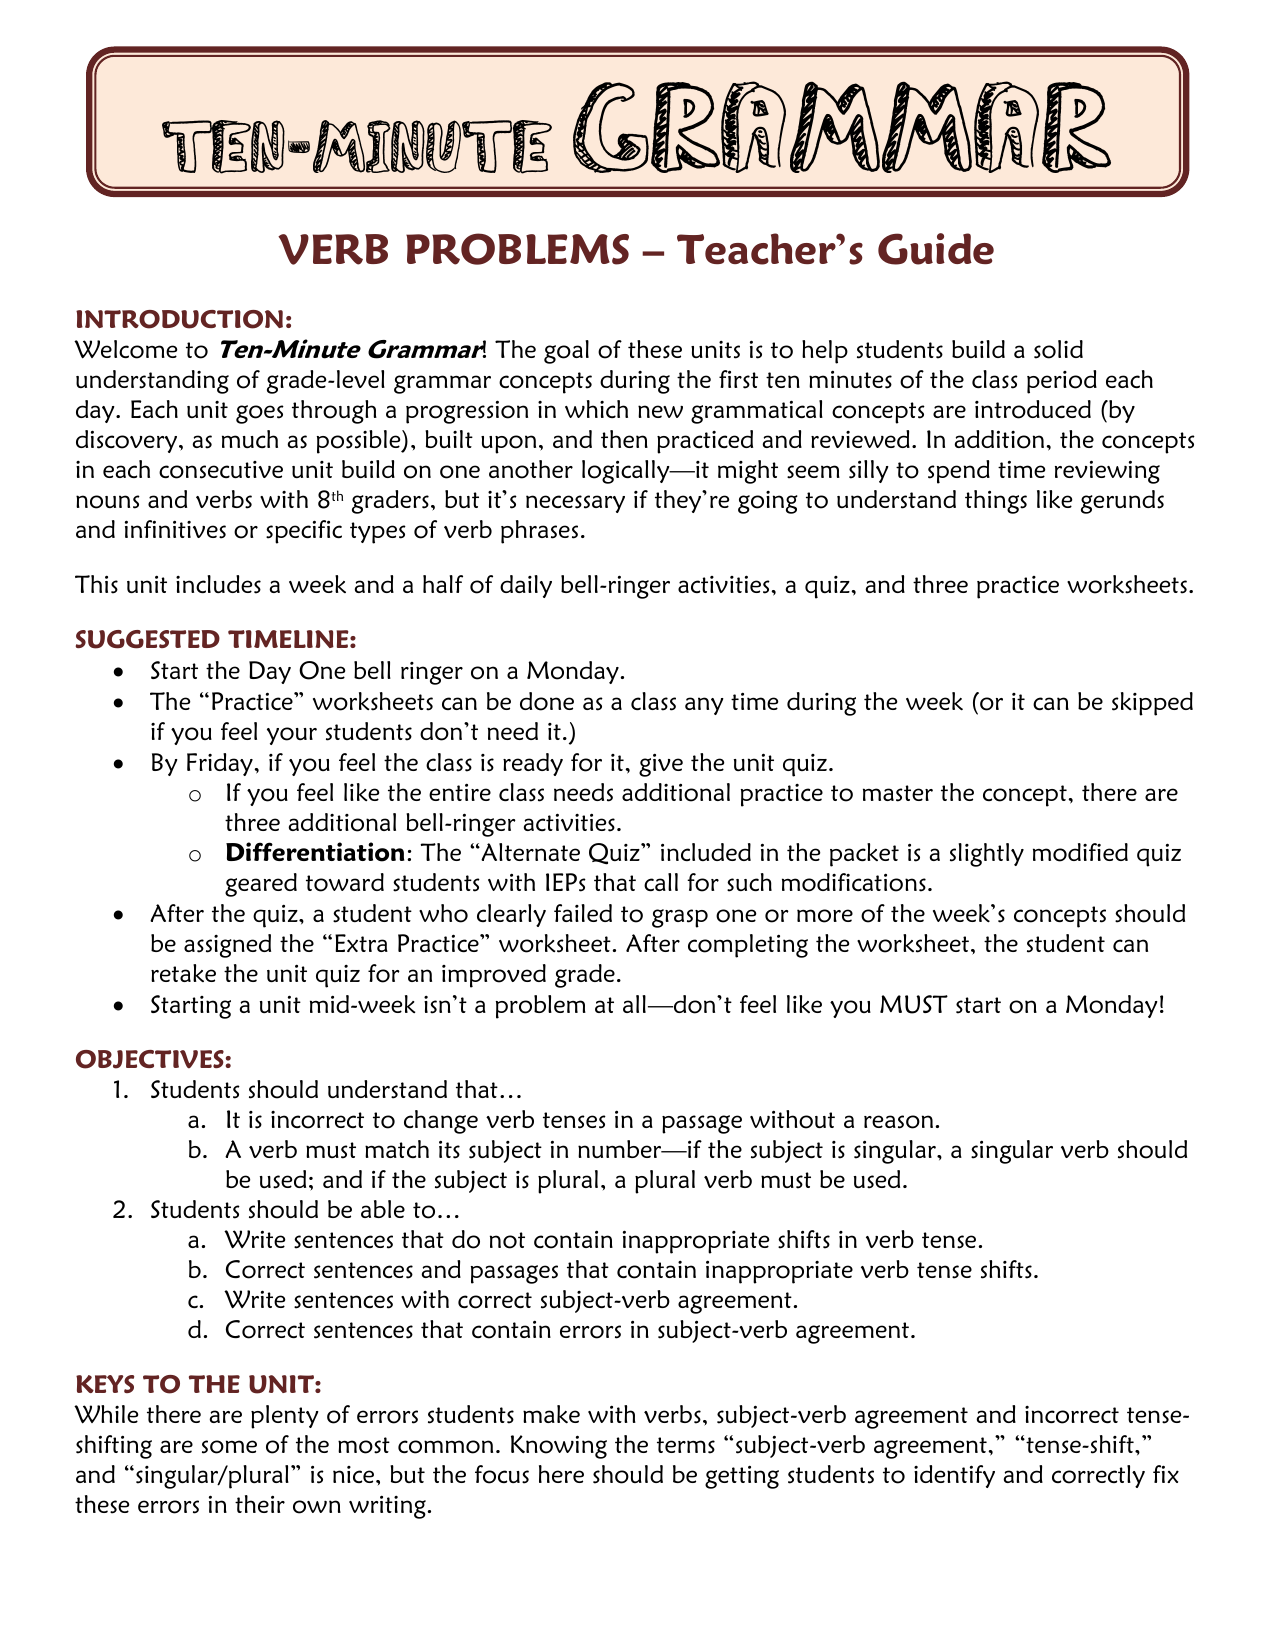 verb-tense-shift-worksheets-worksheets-for-kindergarten